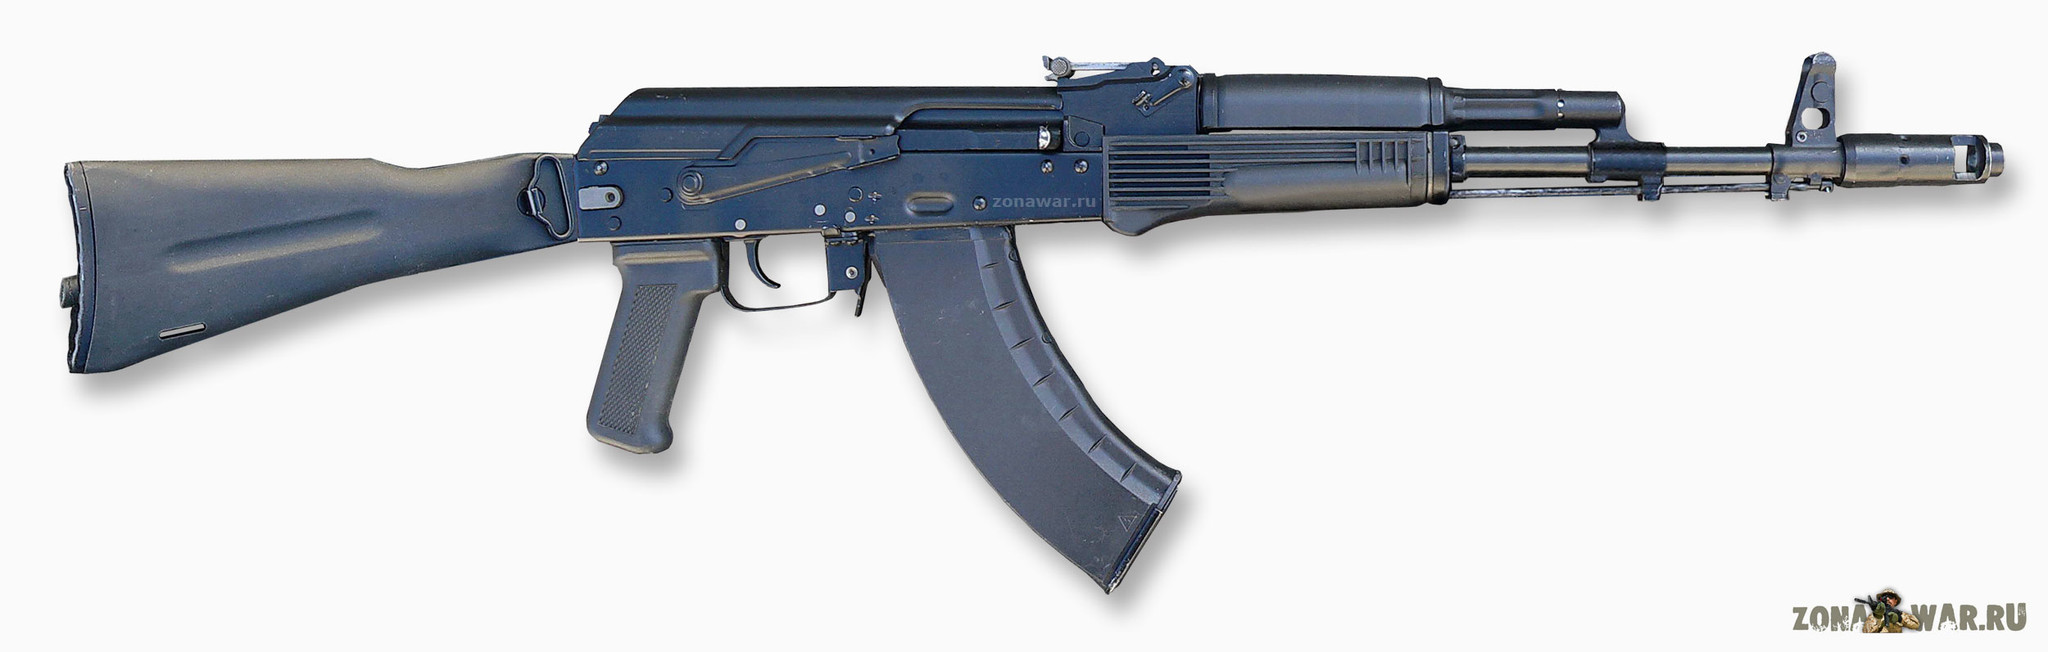 AK 103 assault rifle